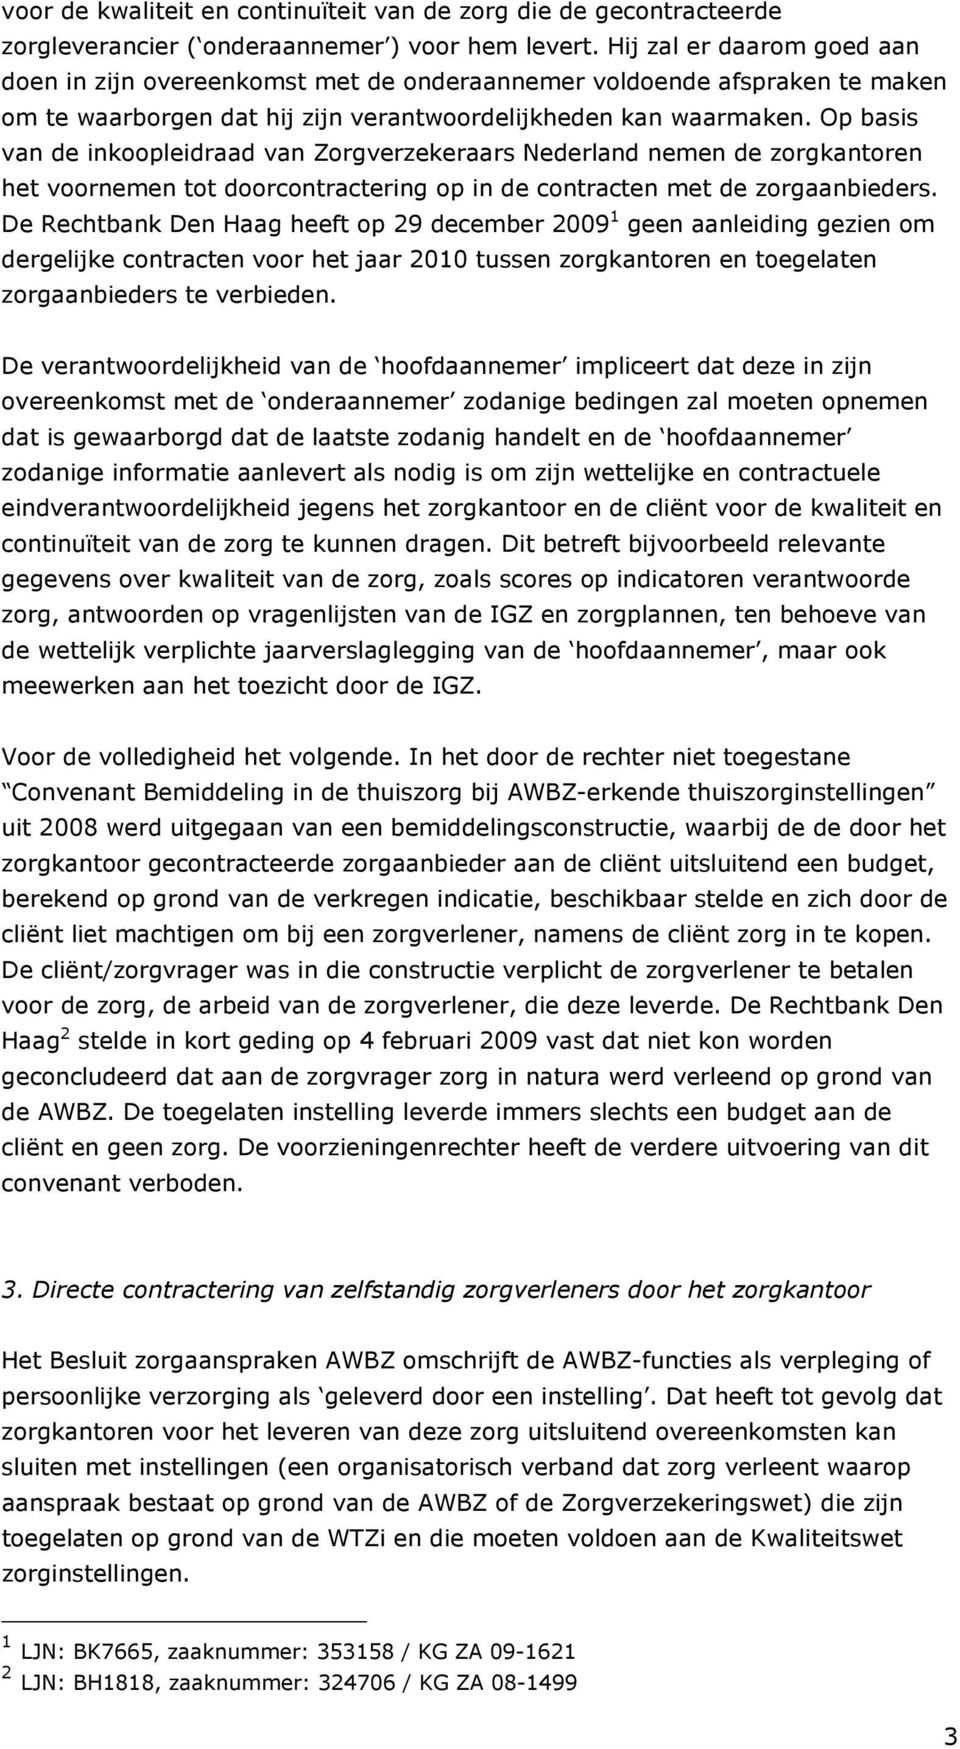 Op basis van de inkoopleidraad van Zorgverzekeraars Nederland nemen de zorgkantoren het voornemen tot doorcontractering op in de contracten met de zorgaanbieders.